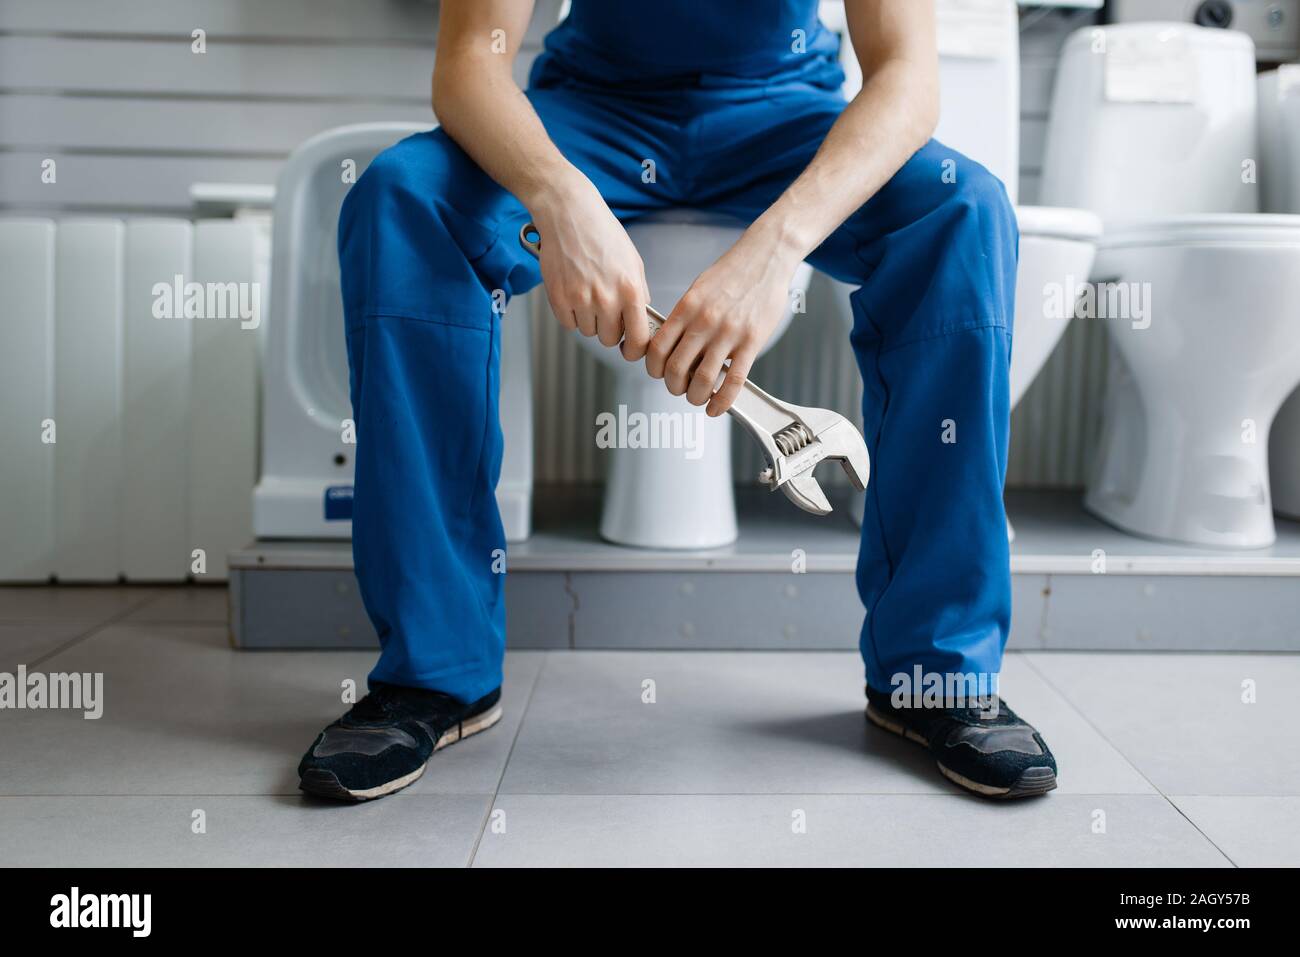 Klempner in Uniform sitzen auf Toilette in plumbering Stockfotografie -  Alamy